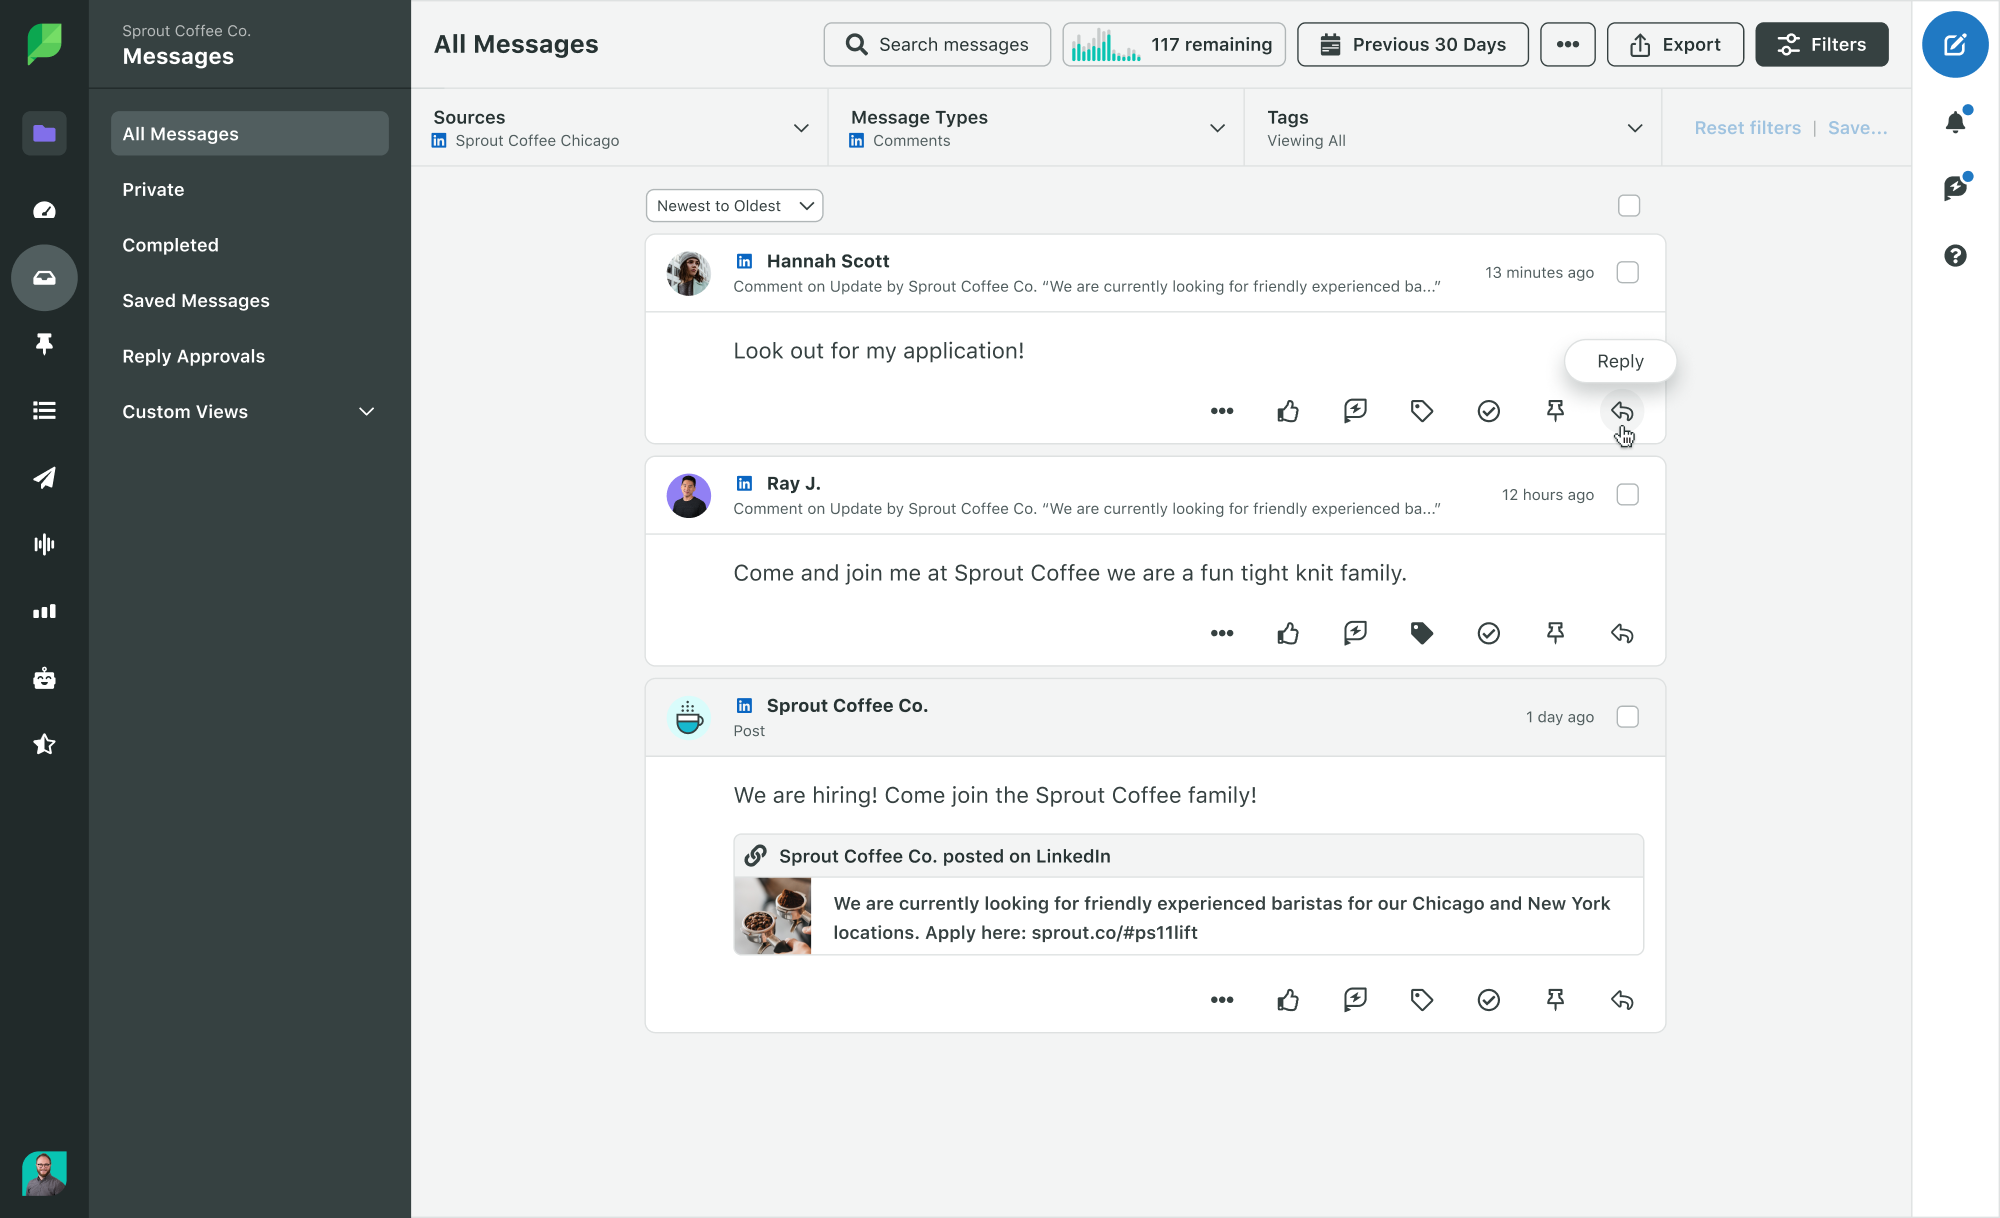 Image de Sprout Social illustrant la Smart Inbox d'engagement avec les filtres LinkedIn sélectionnés et le survol des réponses